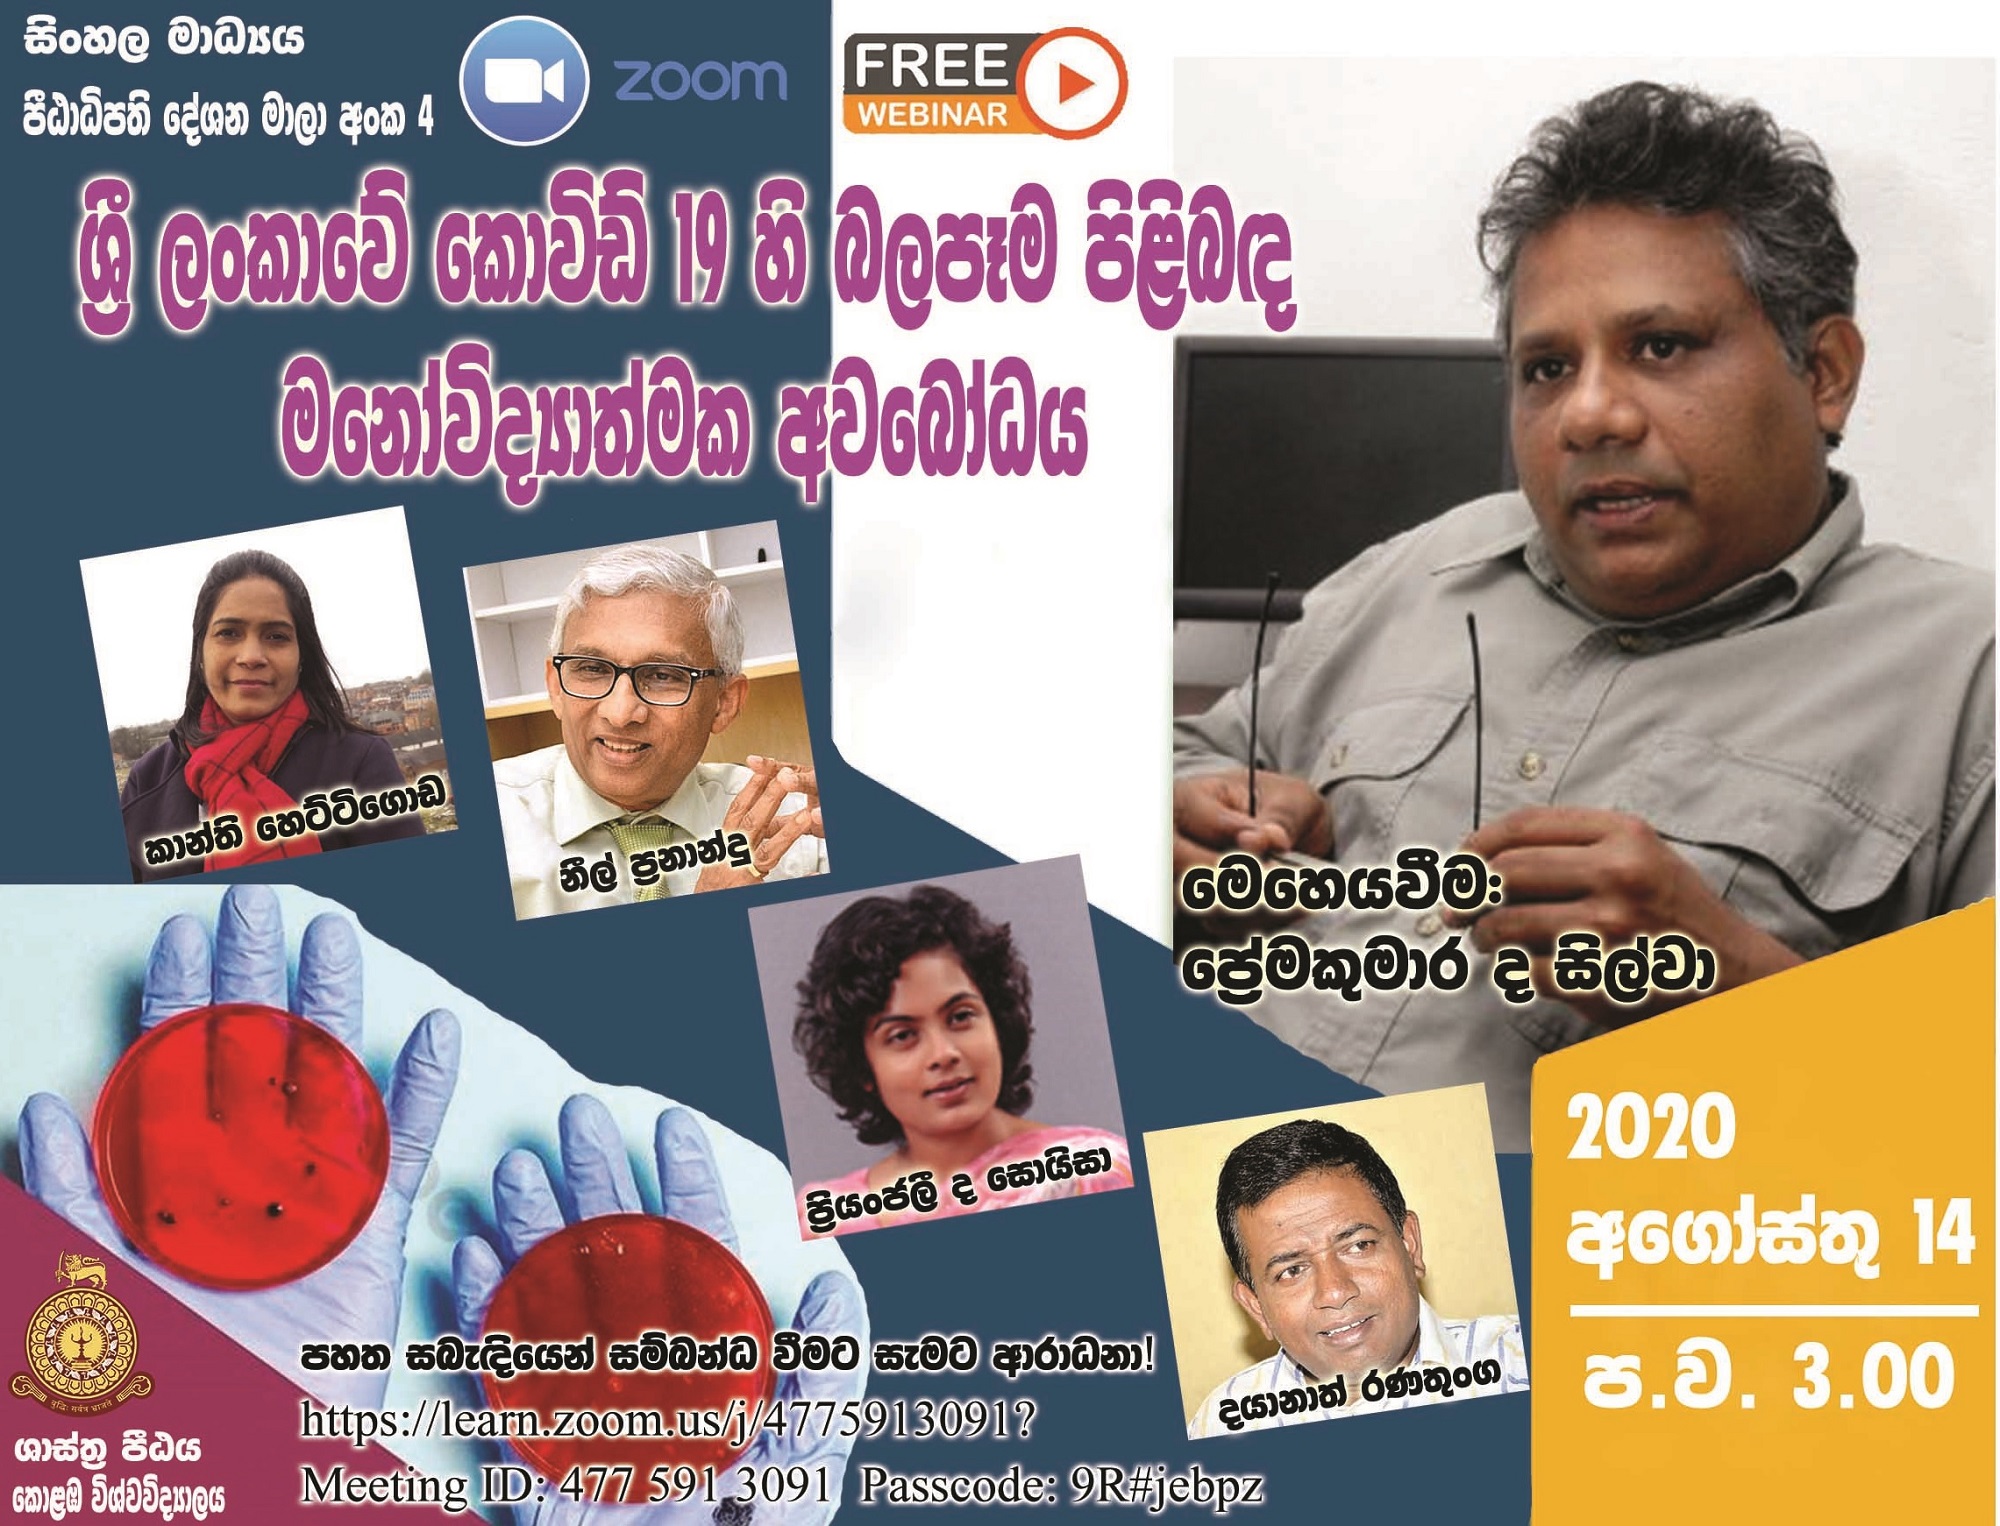 Dean’s Lecture Series in Sinhala Medium – No. 4 (ශ්‍රී ලංකාවේ කොවිඩ් 19 හි බලපෑම පිළිබද මනෝවිද්‍යාත්මක අවබෝධය)- 14th August